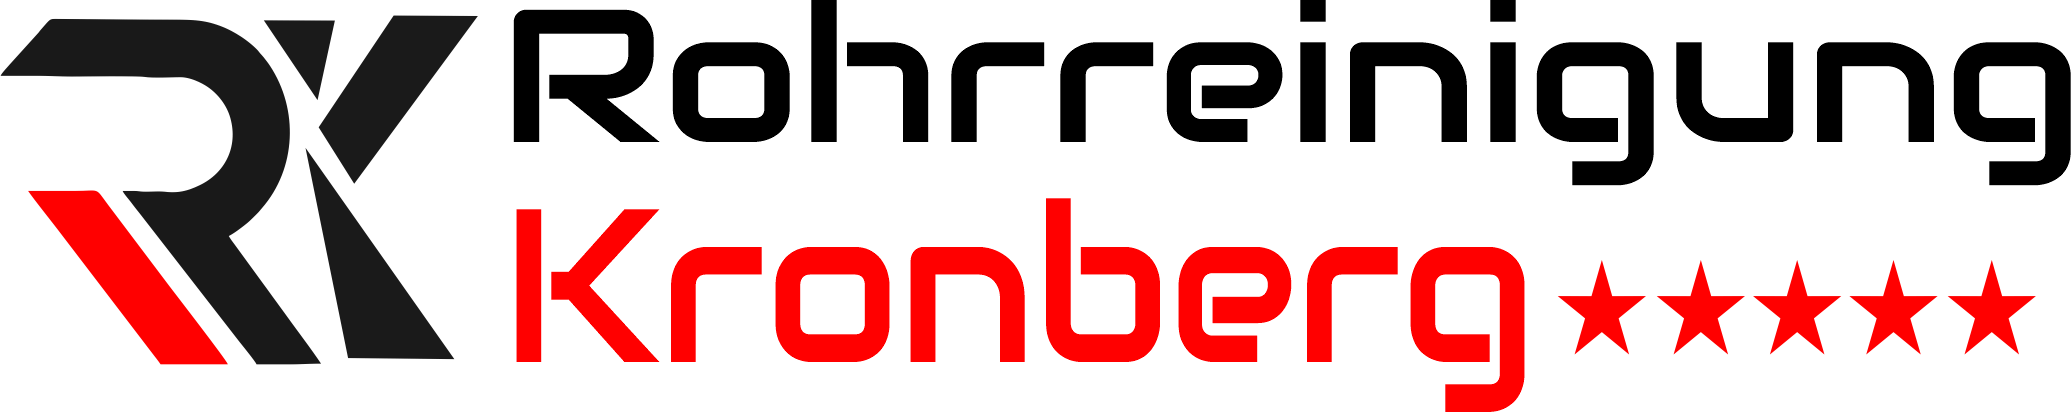 Rohrreinigung Kronberg Logo